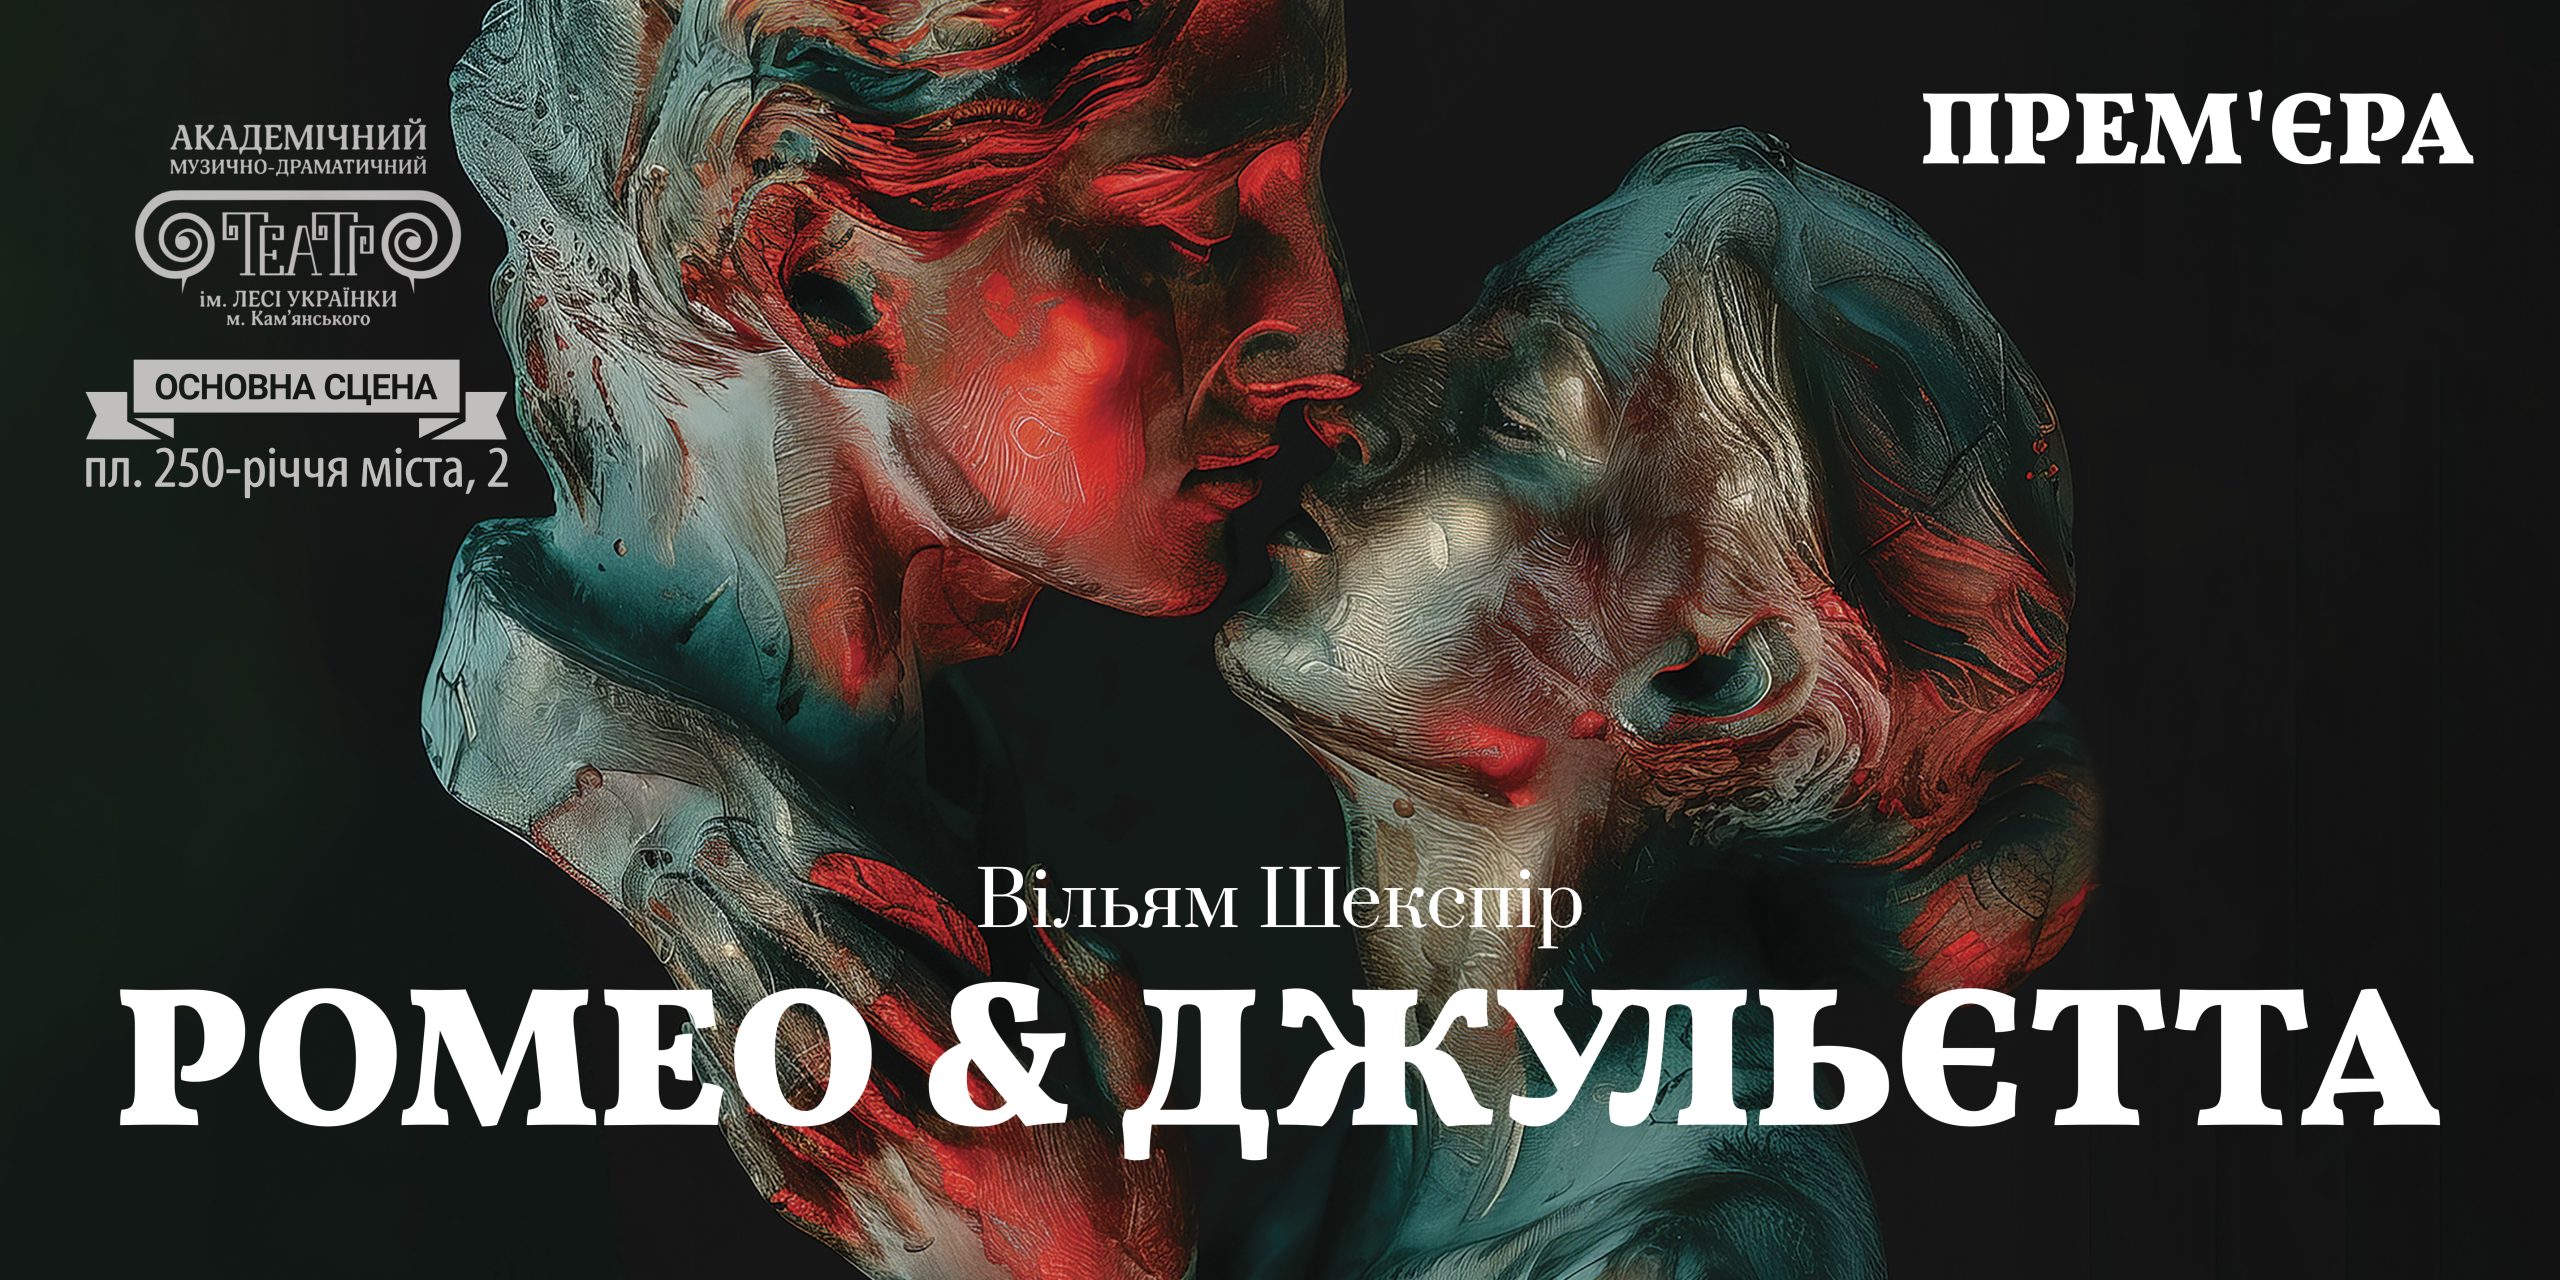 Театр Кам’янського запрошує на прем’єру вистави “Ромео і Джульєтта”